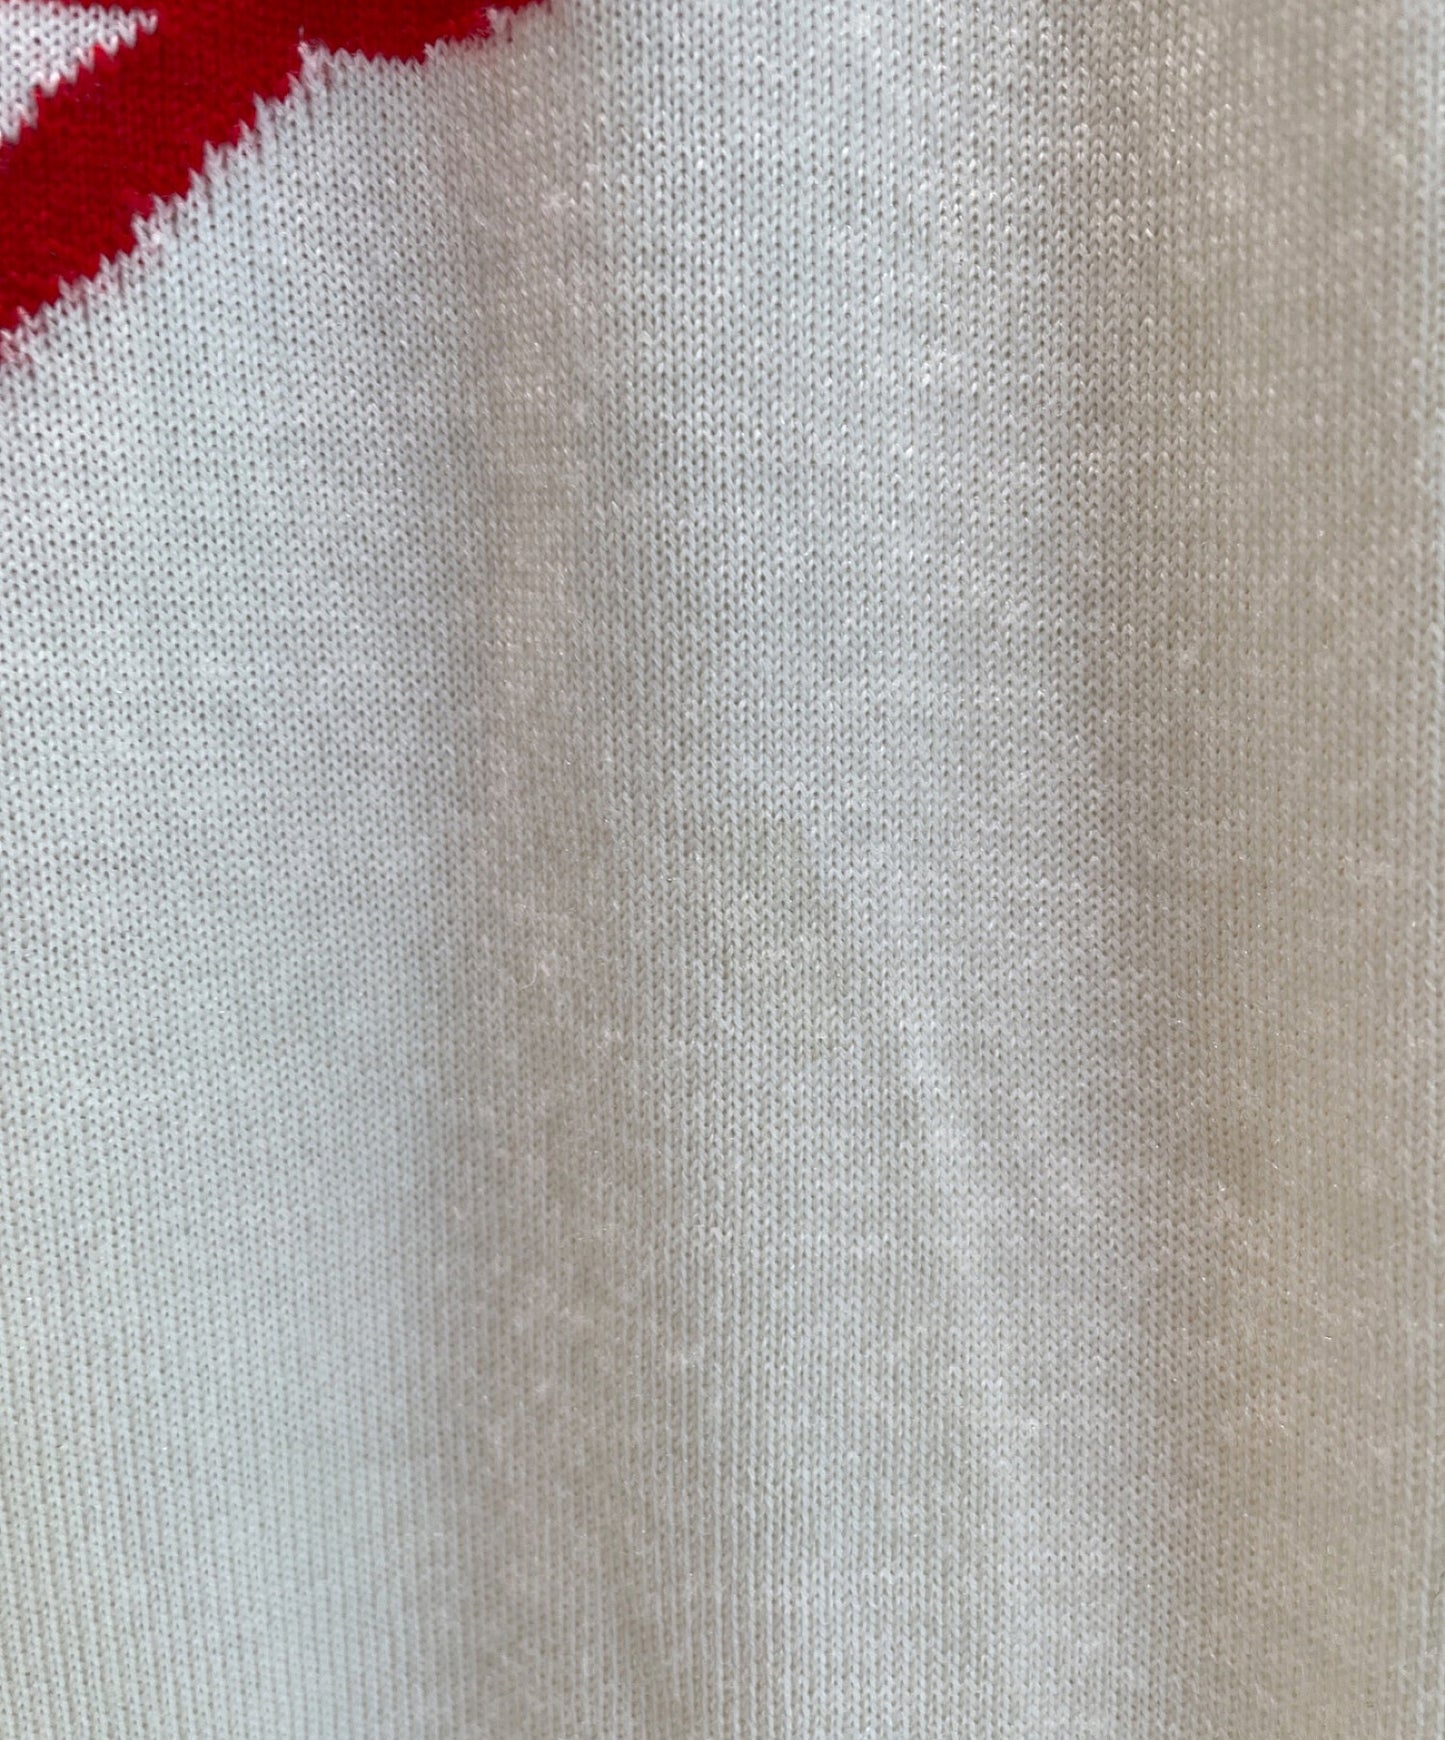 Louis Vuitton × Nigo Intarsia Heart Turtleneck 니트 스웨터 rm221m